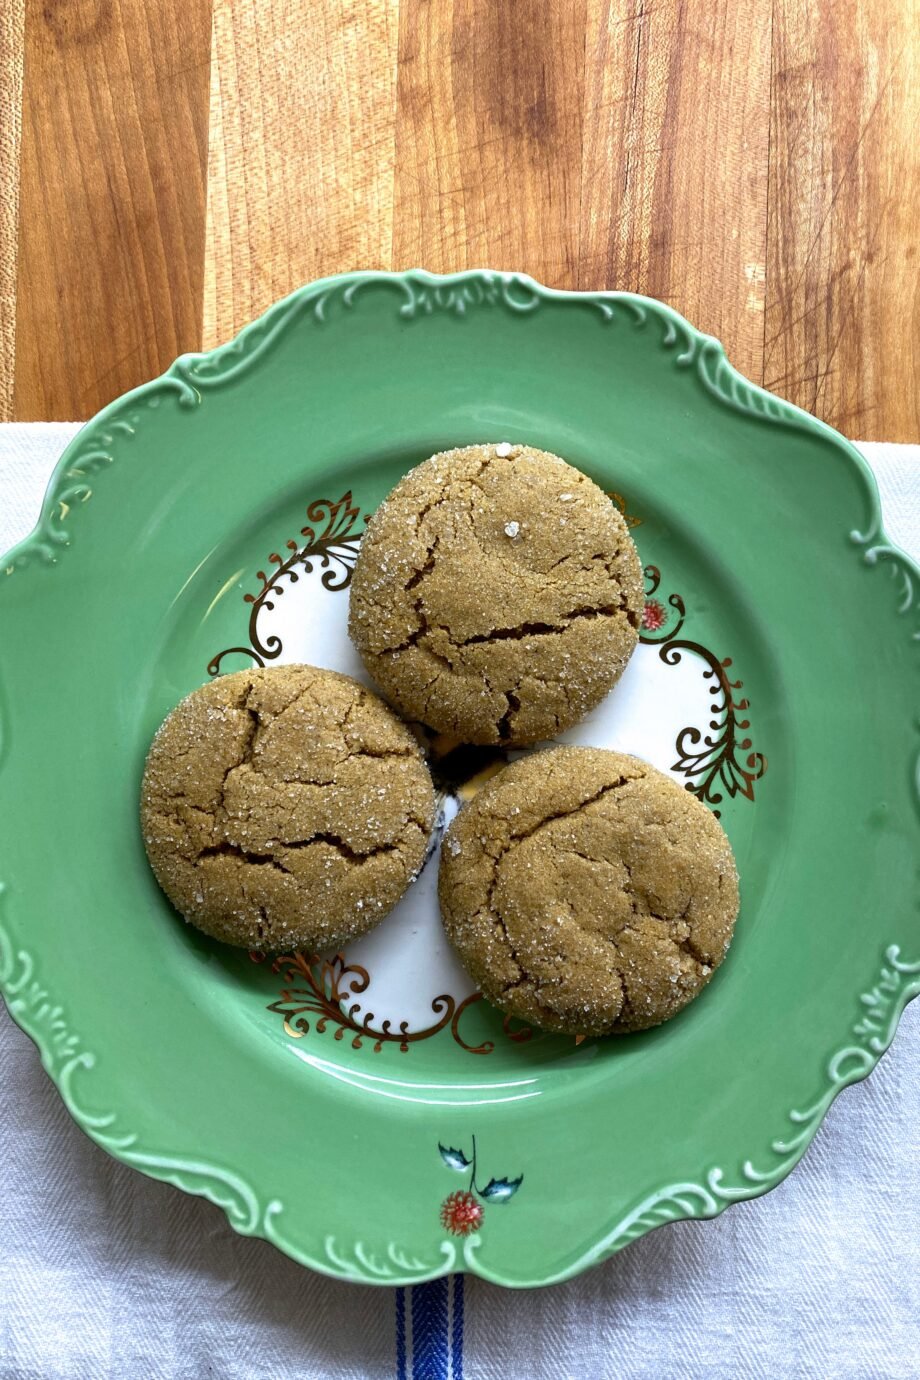 gingerbread-cookies-μπισκότα-κανέλας-από-τον-manolo-blahnik-158867